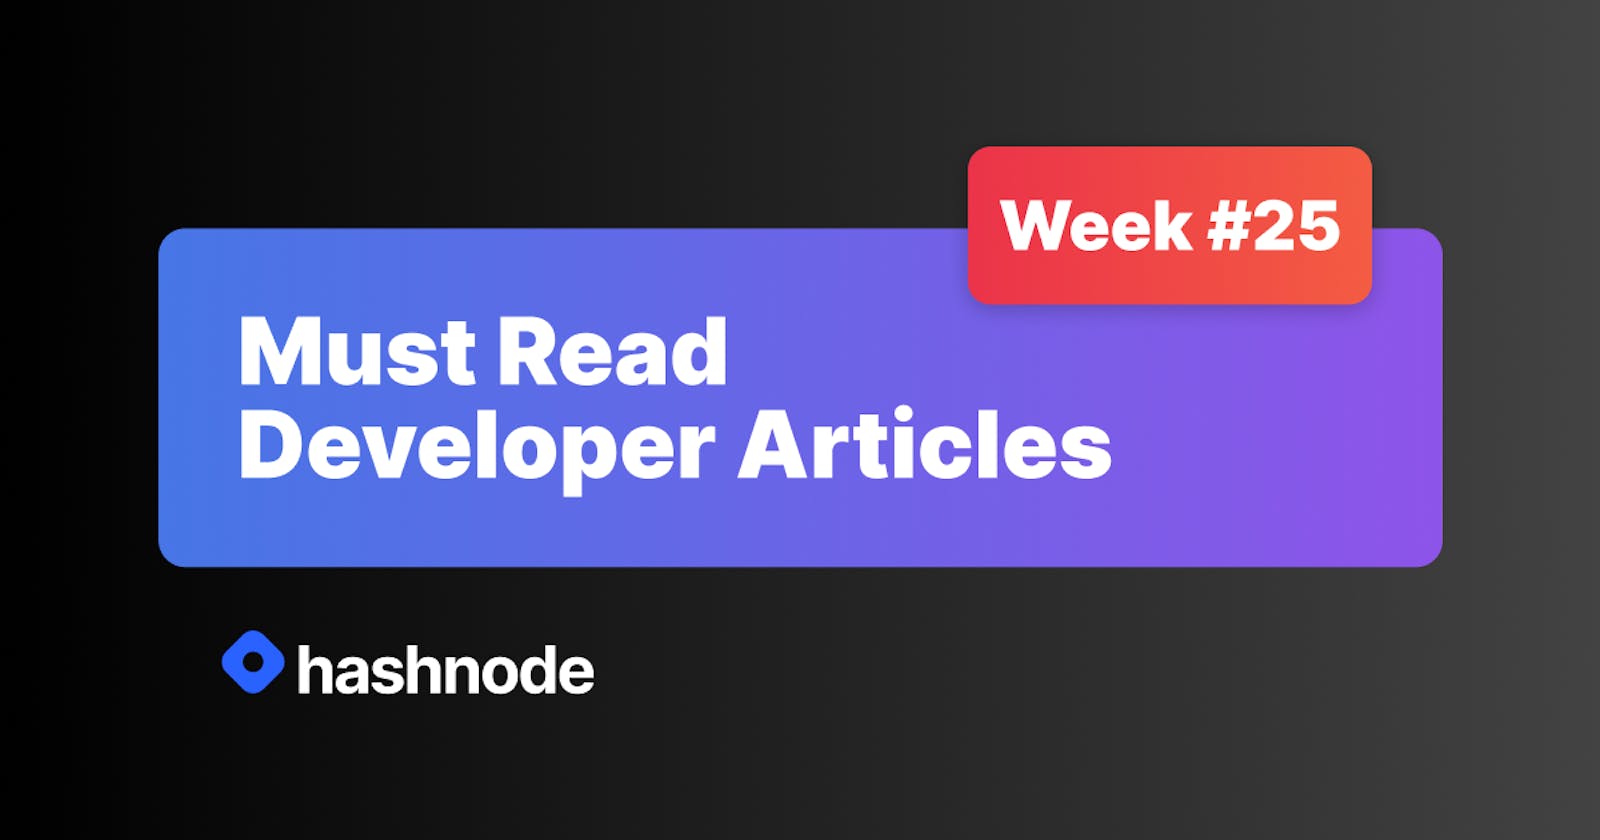 Must Read Developer Articles on Hashnode - #25